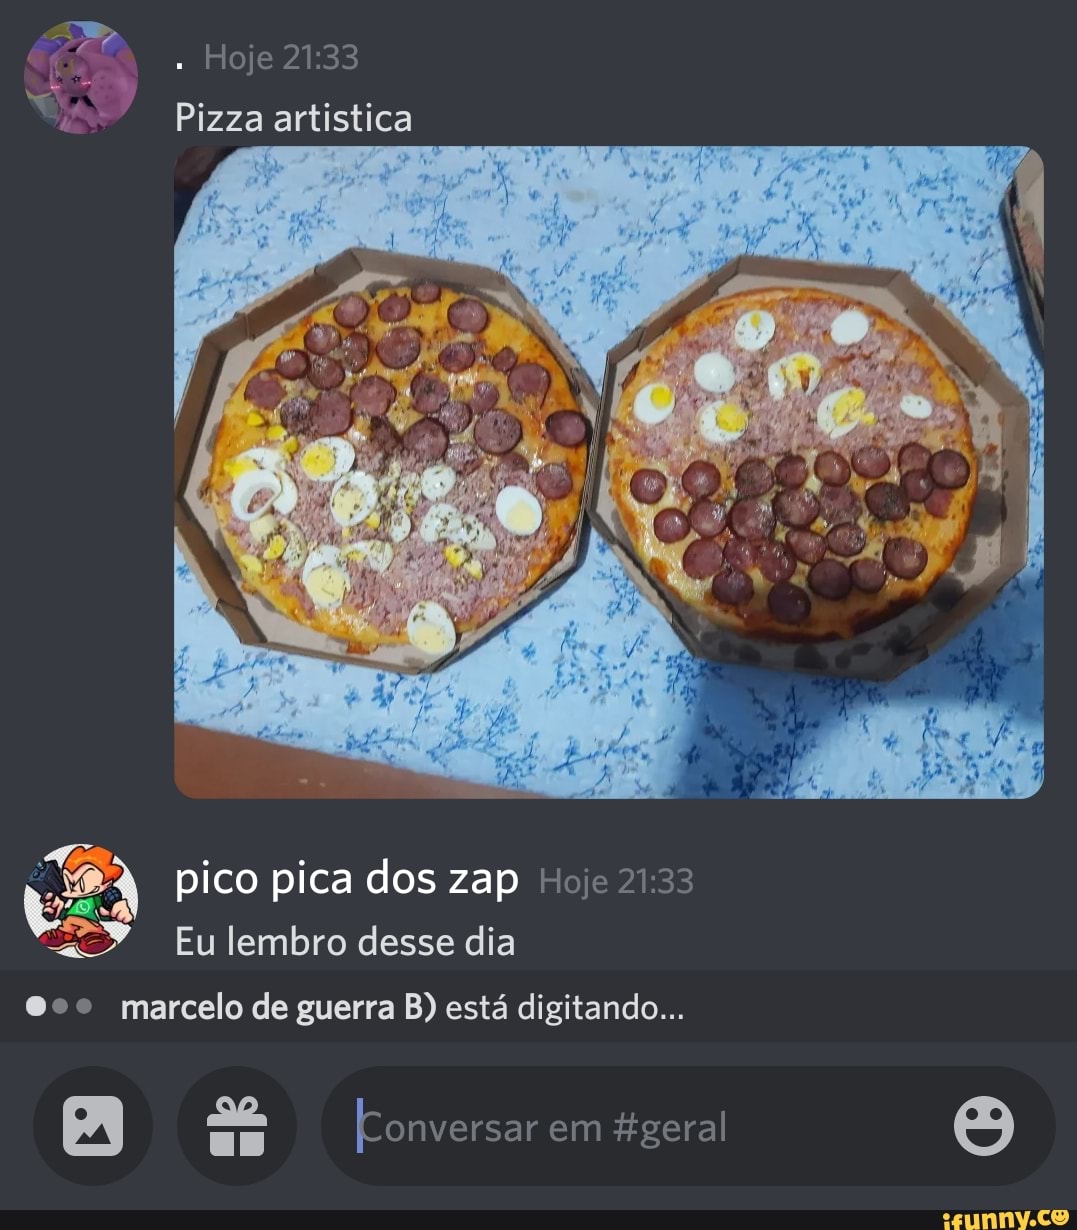 Pizza Zap Zap - Lojas